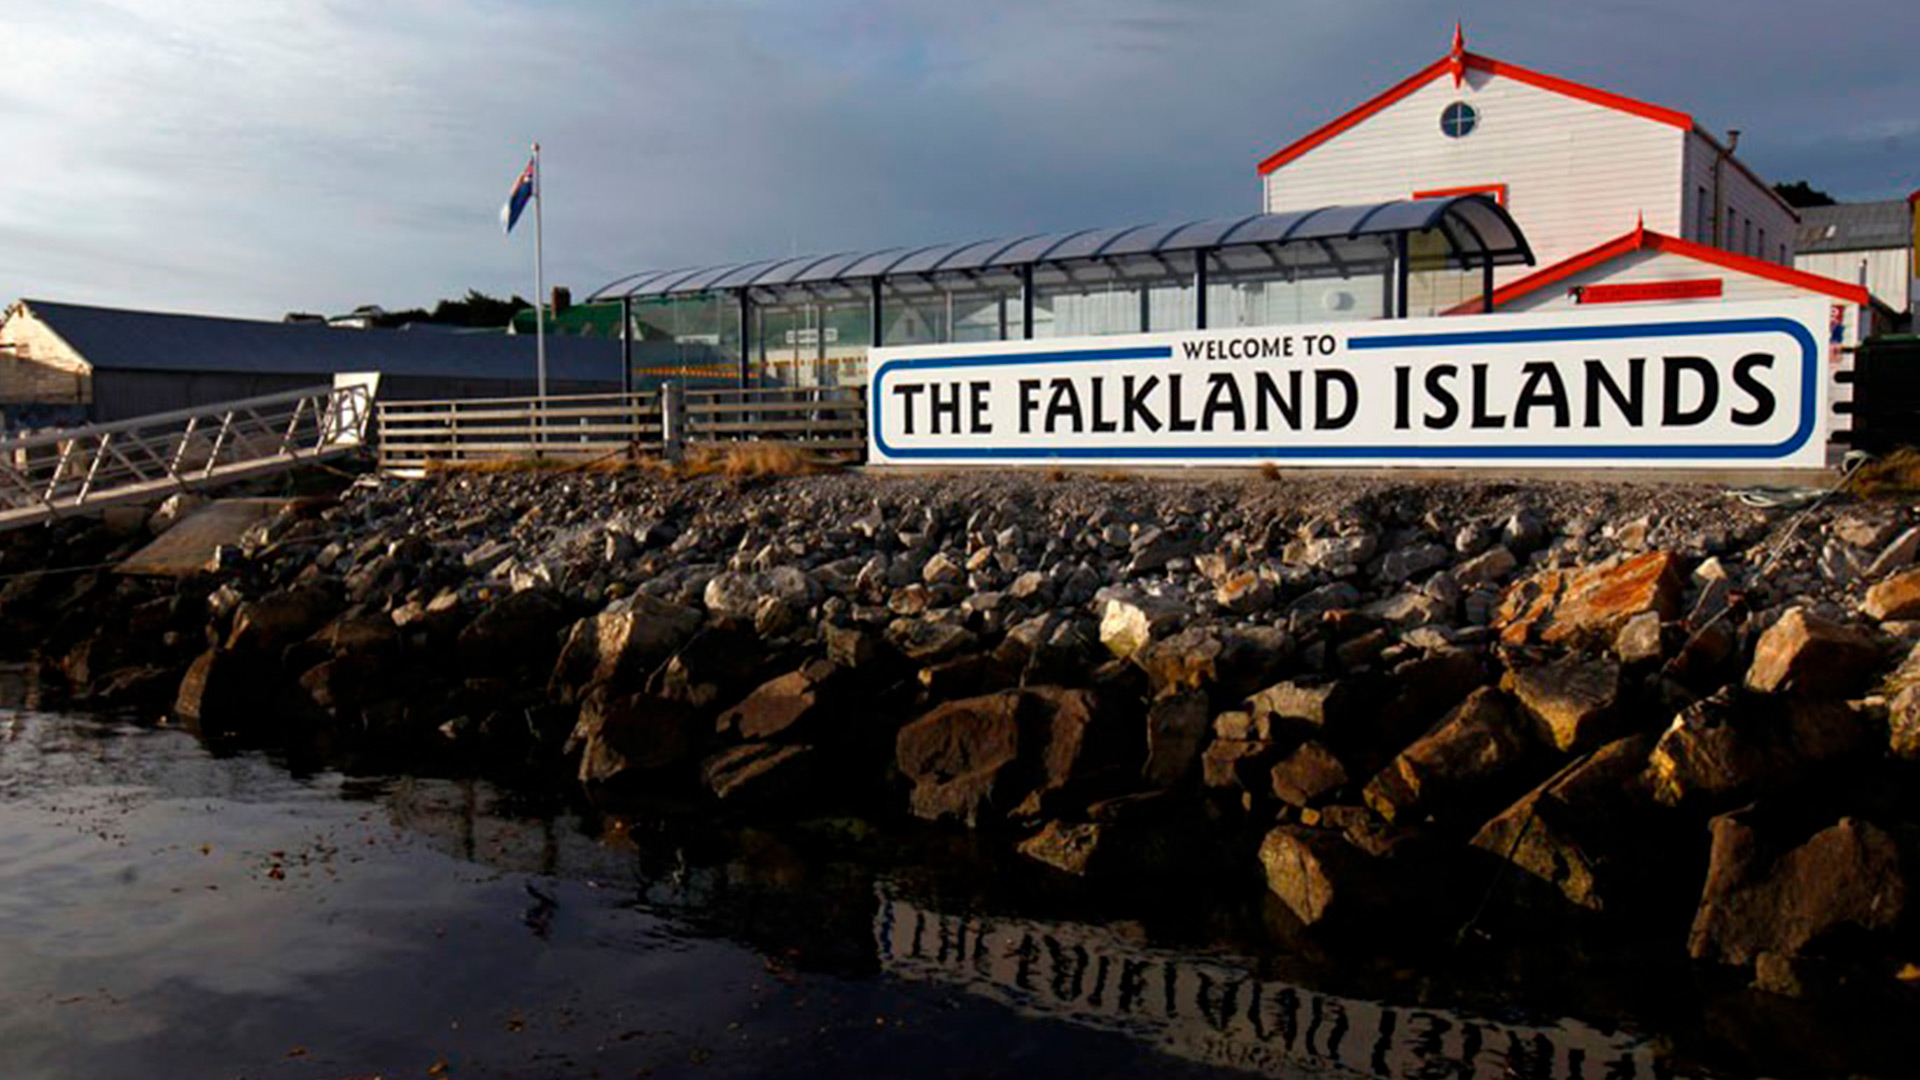 Los británicos llaman "Falklands" a las islas Malvinas reclamadas por Argentina